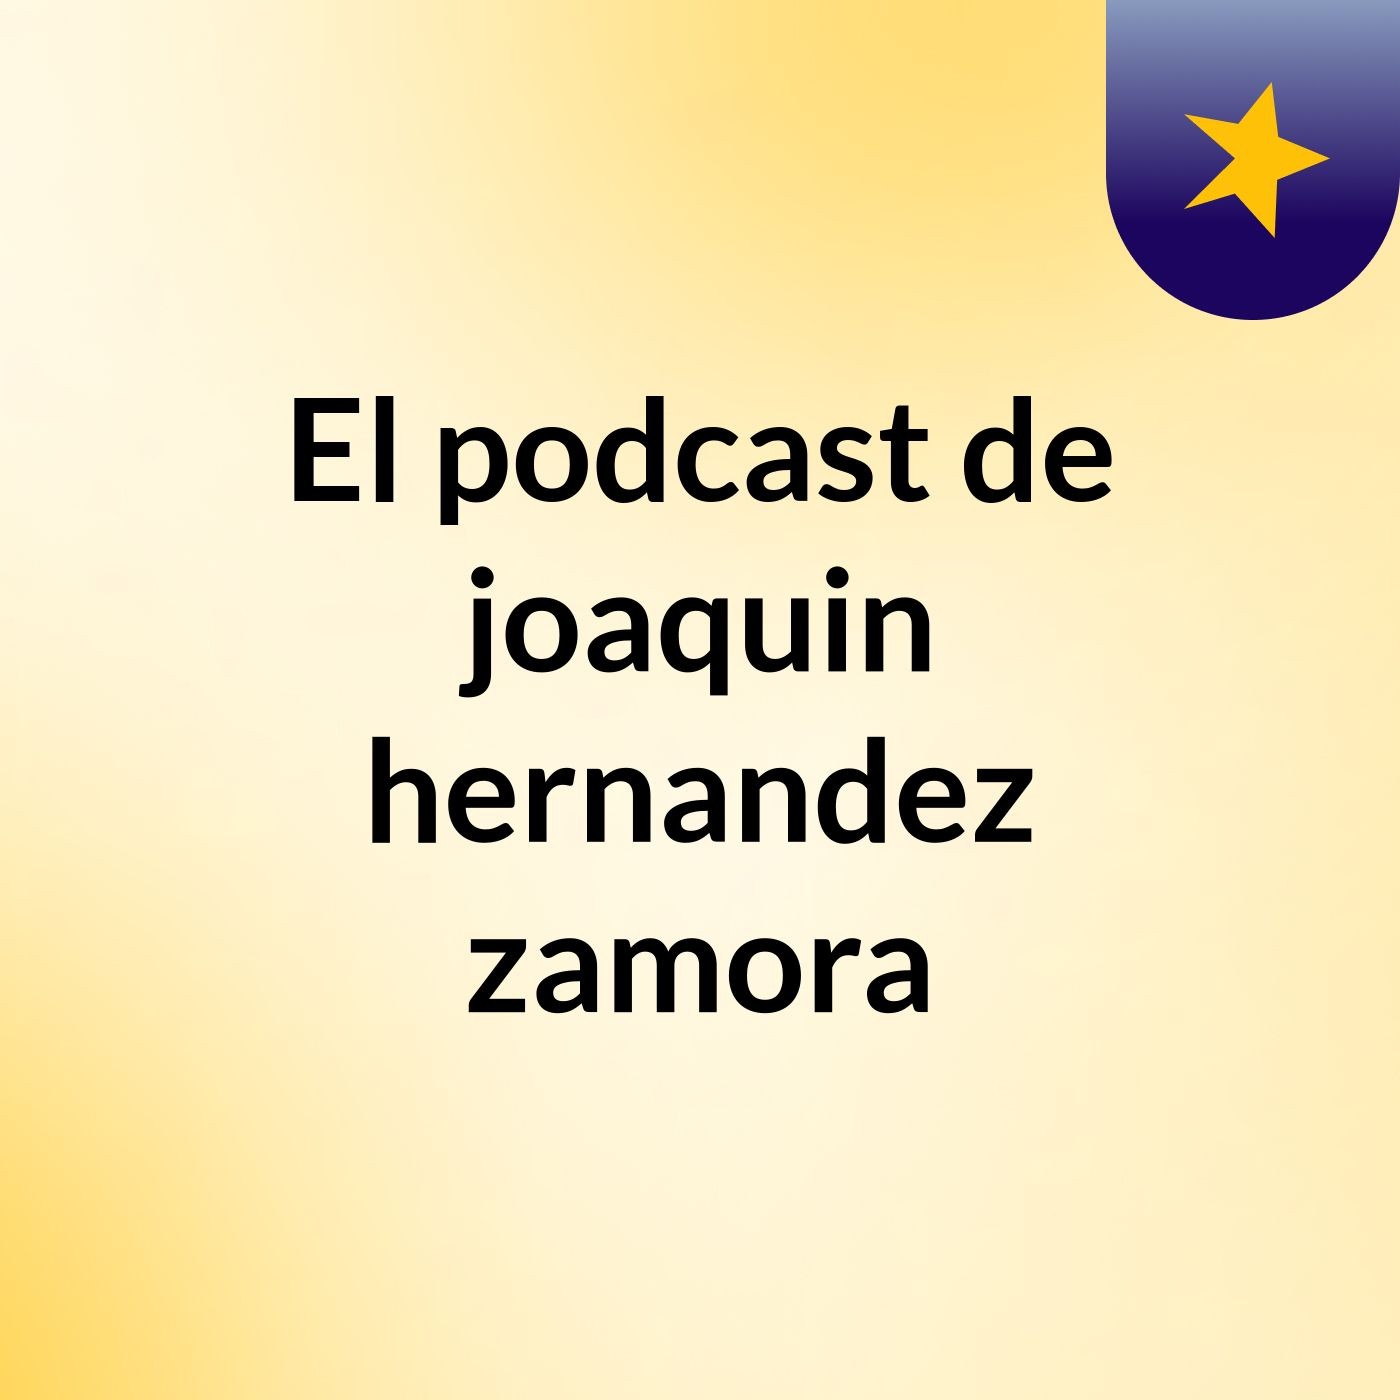 El podcast de joaquin hernandez zamora